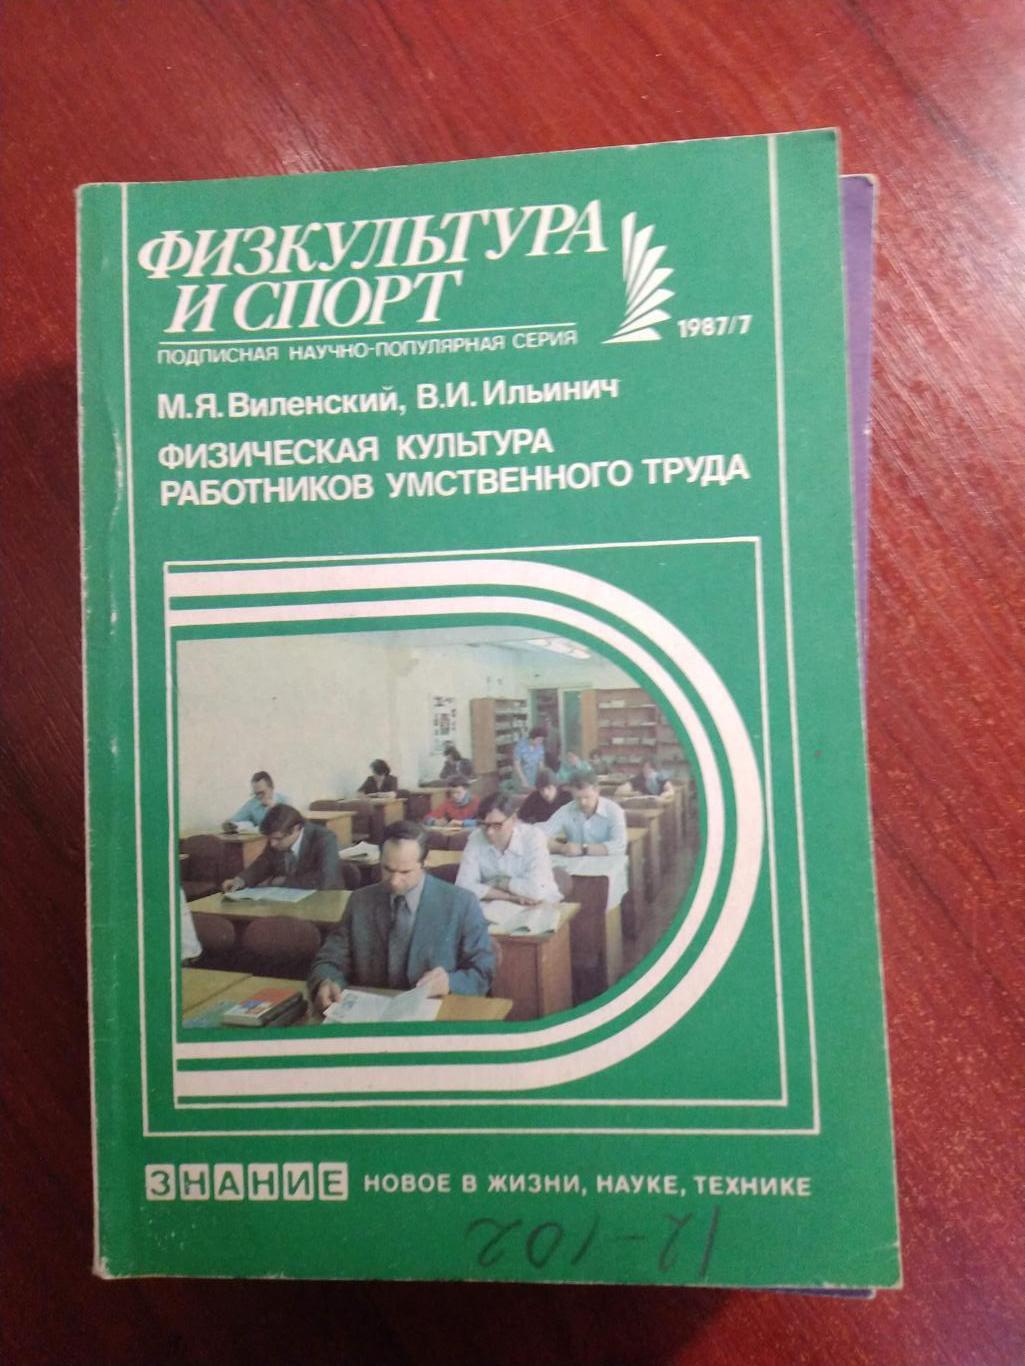 Серия Физкультура и спорт1987 №7 Физкультура работников умственного труда